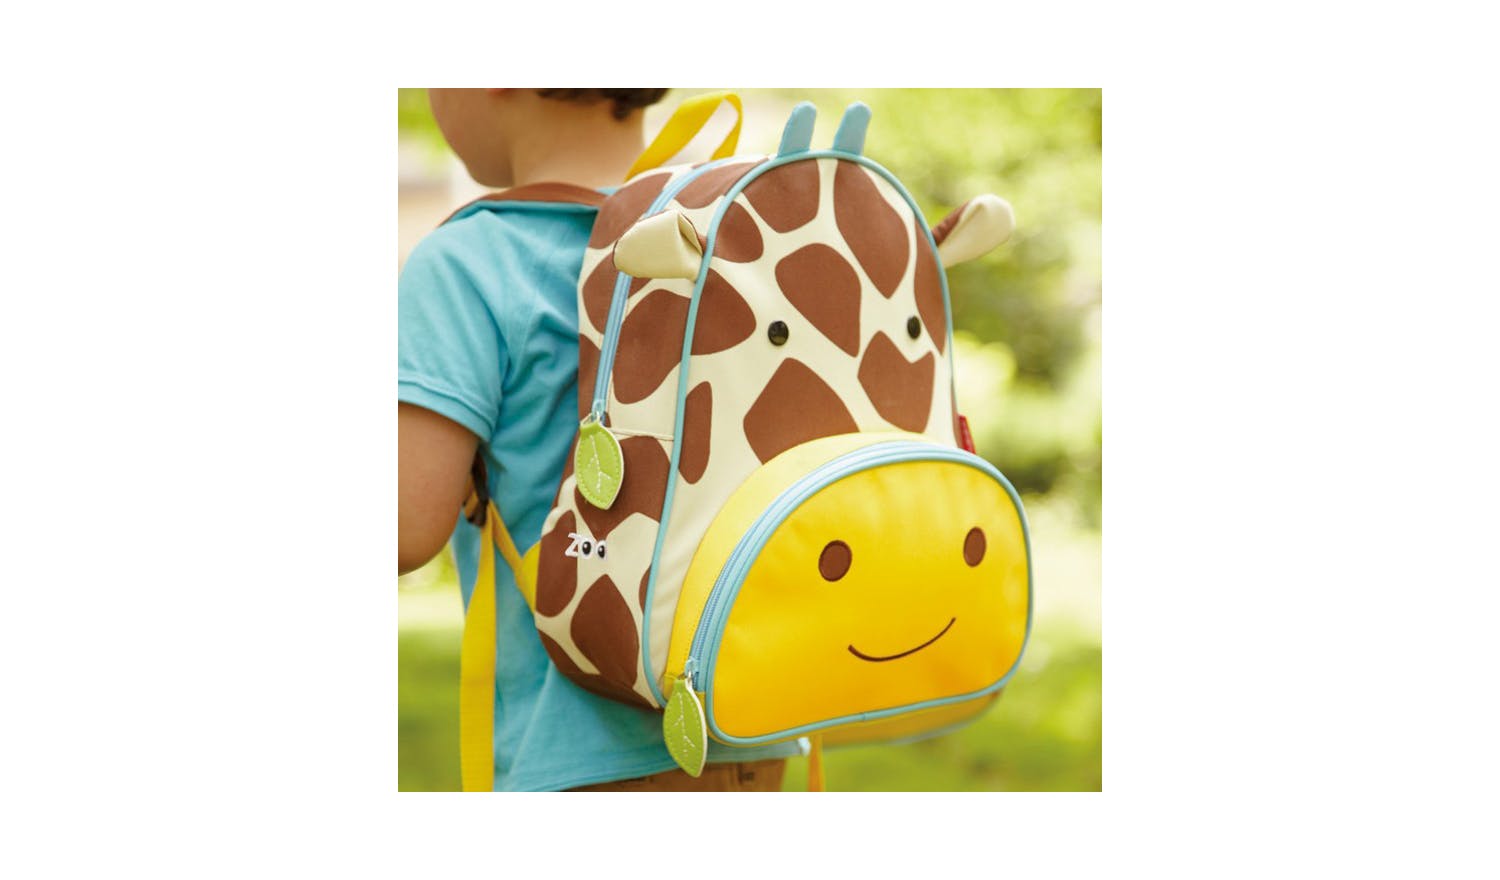 Skip Hop Zoo Little Kid Backpack - Giraffe